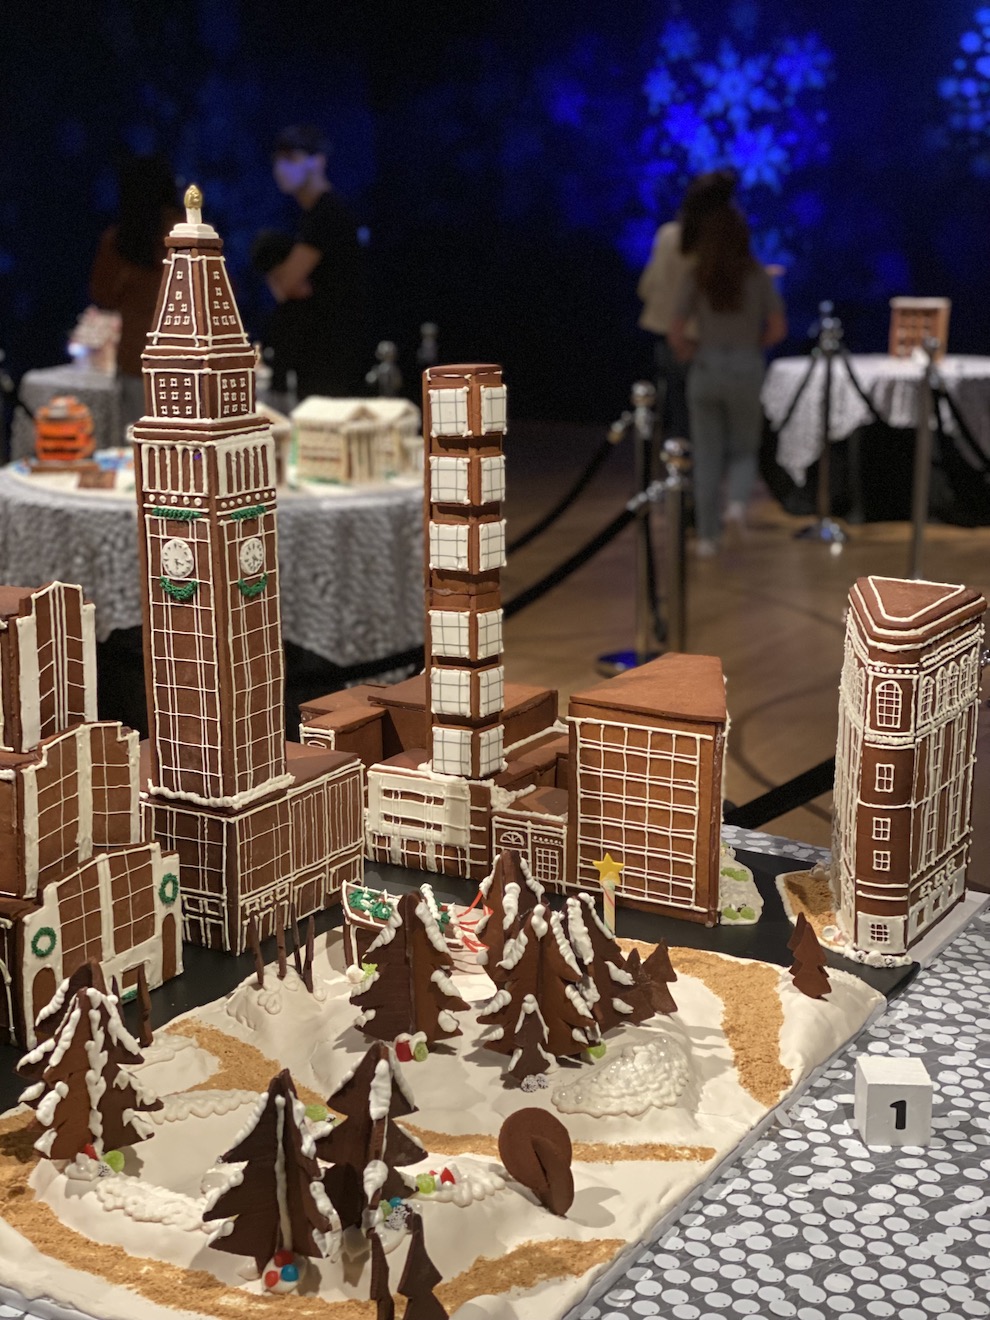 インスタレーション「Gingerbread NYC: Great Borough Bake-Off」、2022 年の作品の XNUMX つである、マディソン スクエア パークの完成した展示の様子。